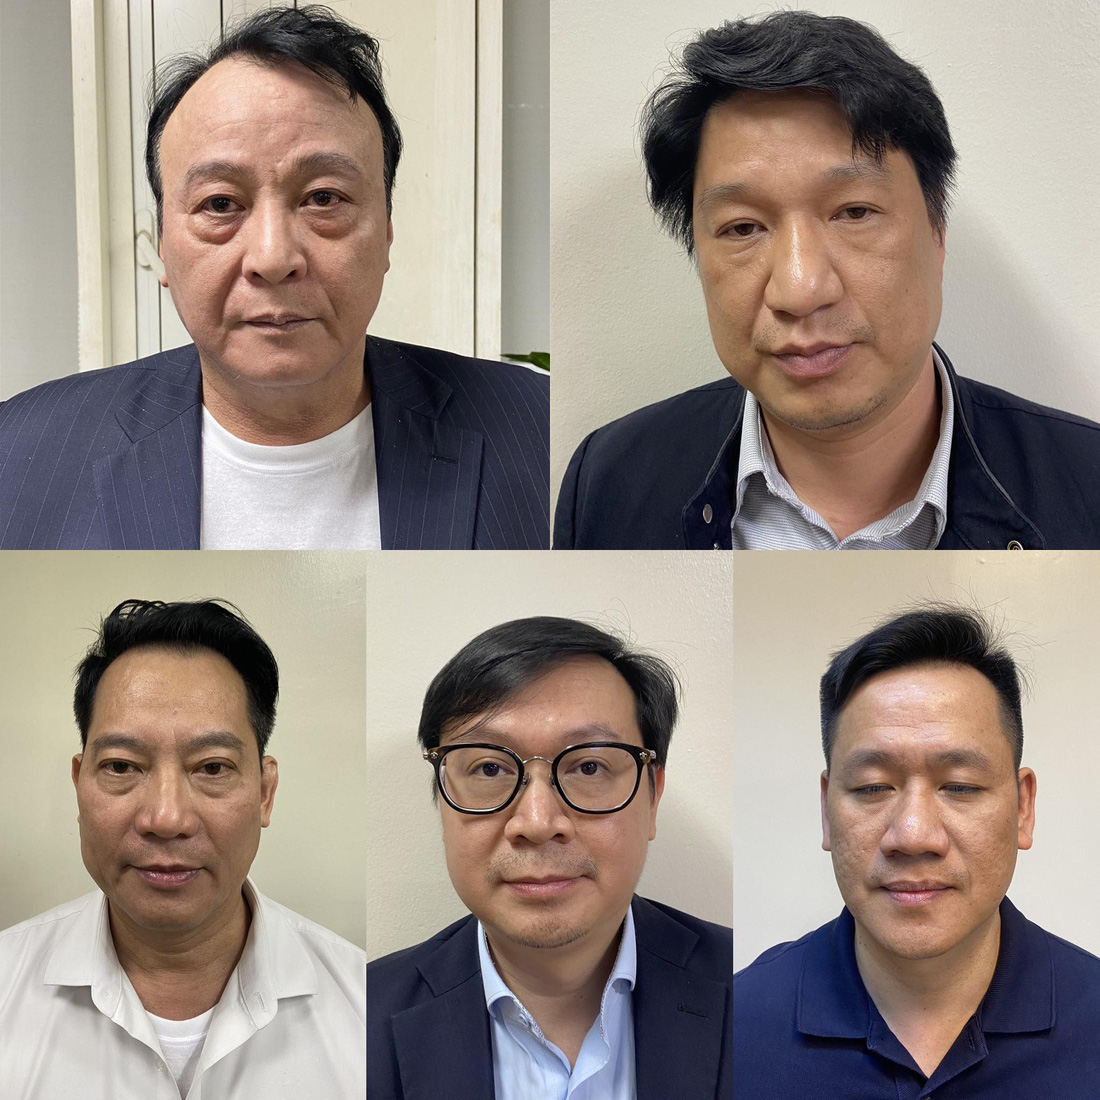 Chủ tịch Tập đoàn Tân Hoàng Minh cùng nhóm bị truy tố trong vụ án - Ảnh: Bộ Công an